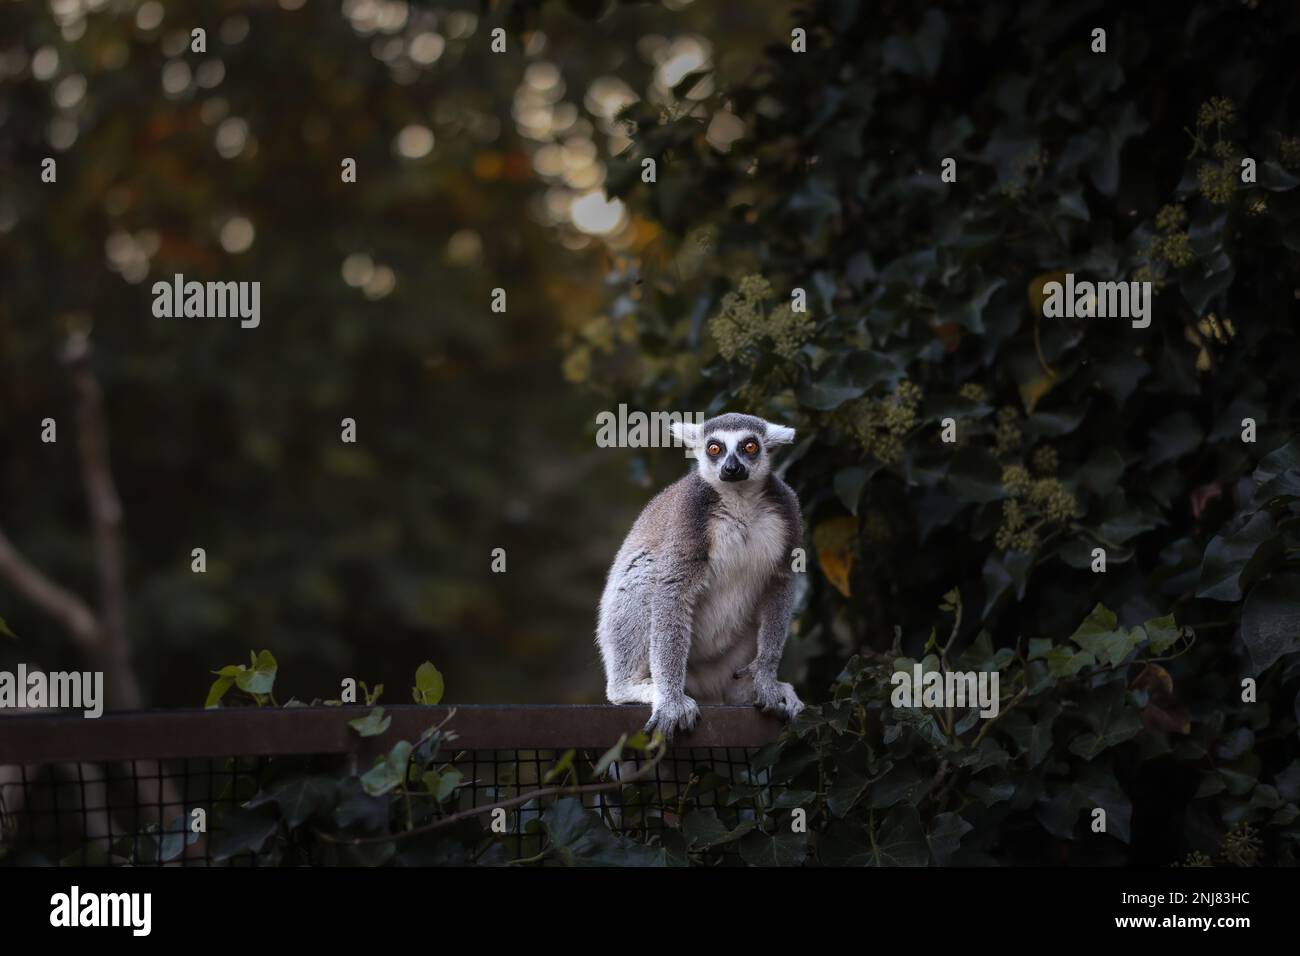 Lemur dalla coda ad anello siede a Fence nello Zoo. Animale nel giardino zoologico. Il lemur Catta è un primate della strepsirrhine. Foto Stock